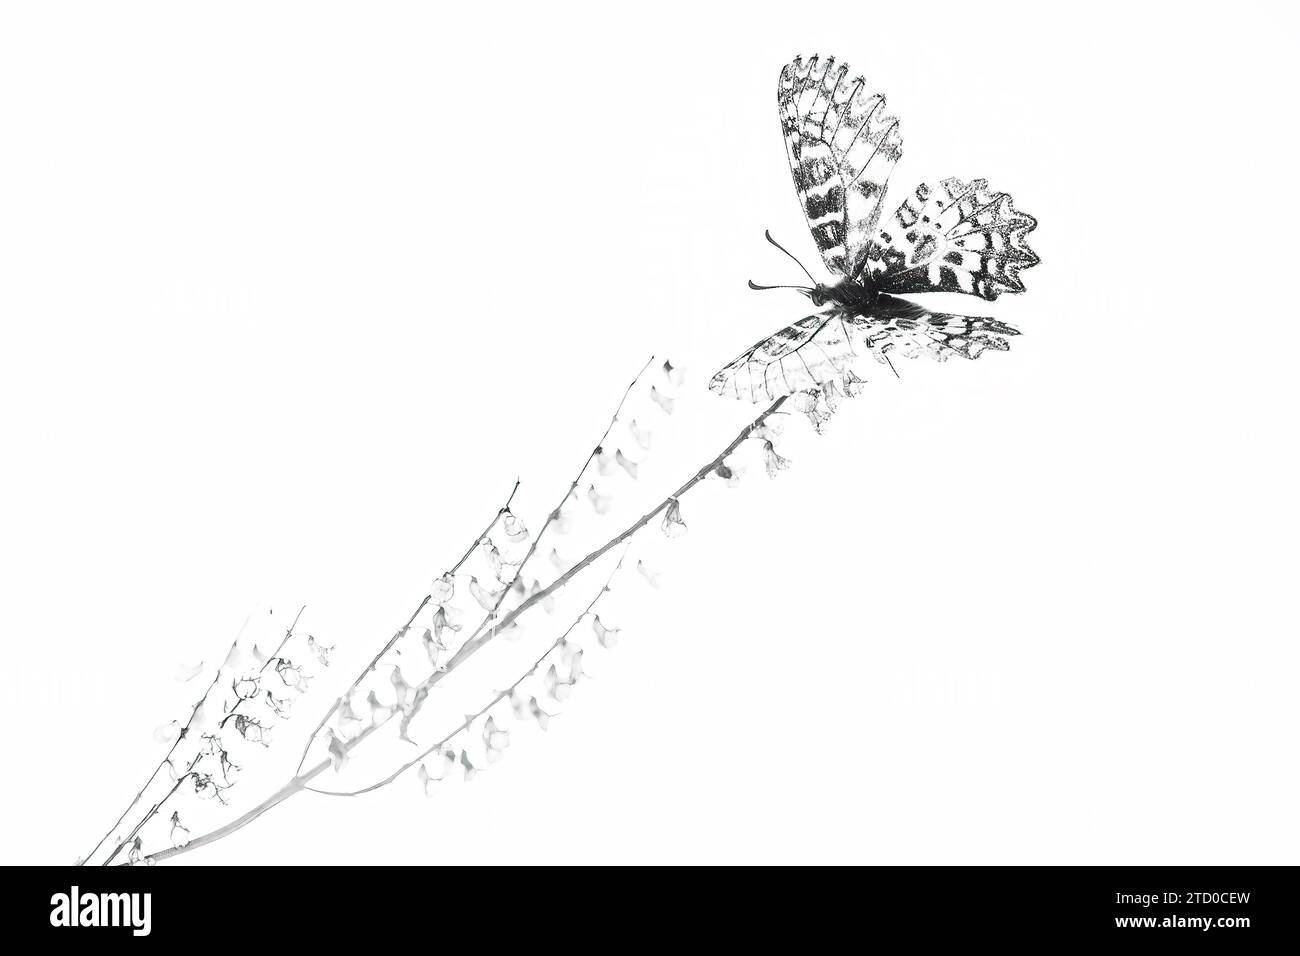 Ein kontrastreiches Schwarz-weiß-Bild, das einen Schmetterling auf einem schlanken Pflanzenstiel festlegt und ein Gefühl von Gelassenheit und Einfachheit vermittelt. Stockfoto